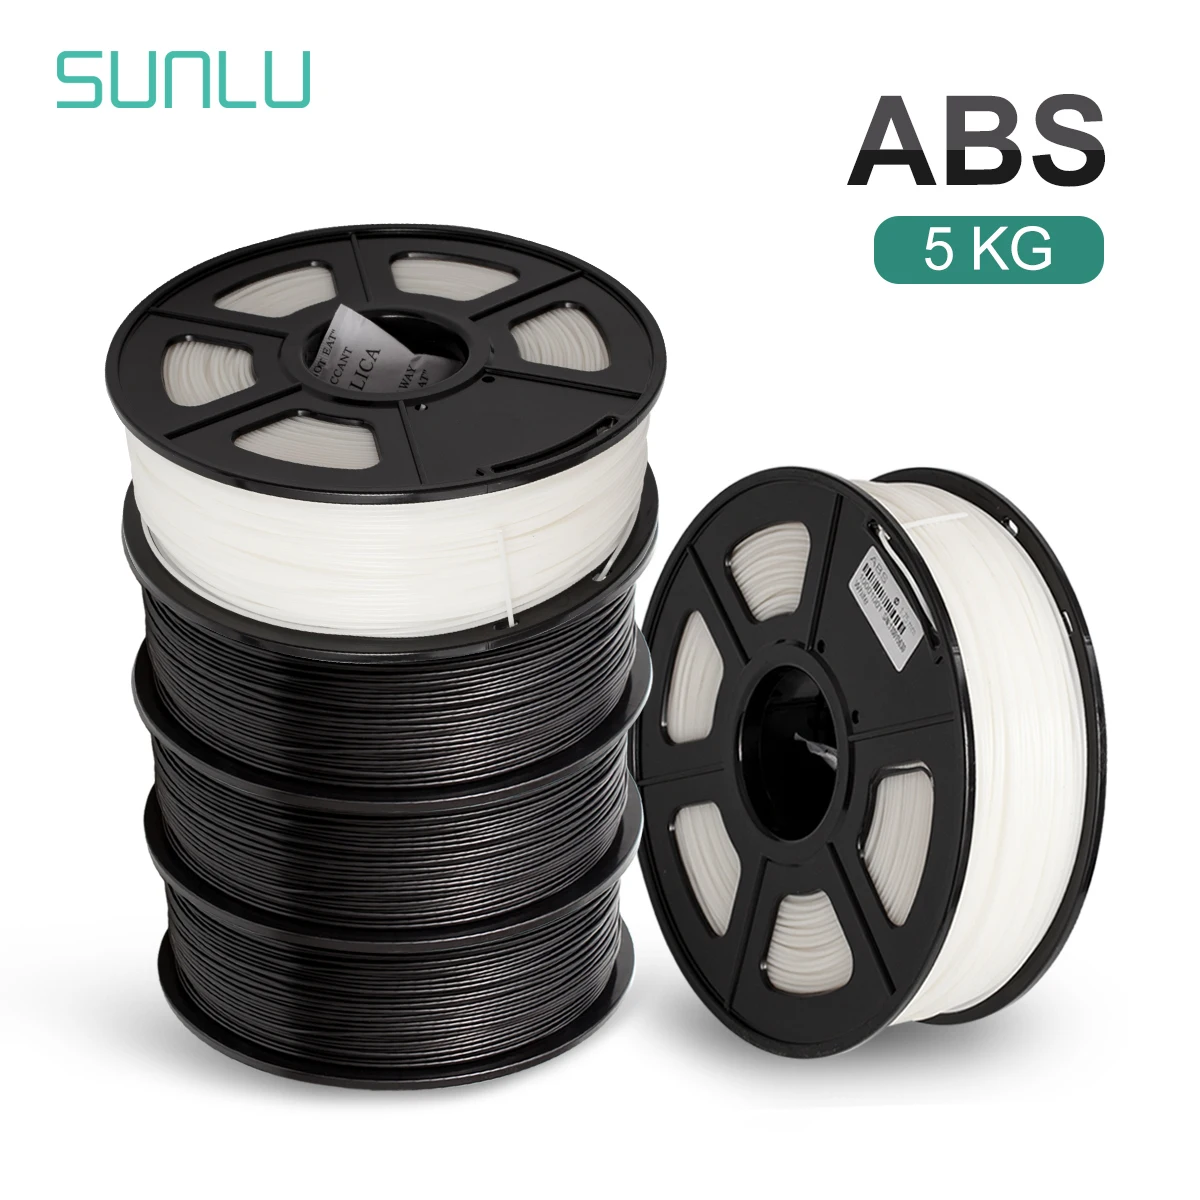 SUNLU-filamento de impresora 3D, Material de impresión ABS en blanco y negro, 1,75mm, 1KG, 5 rollos